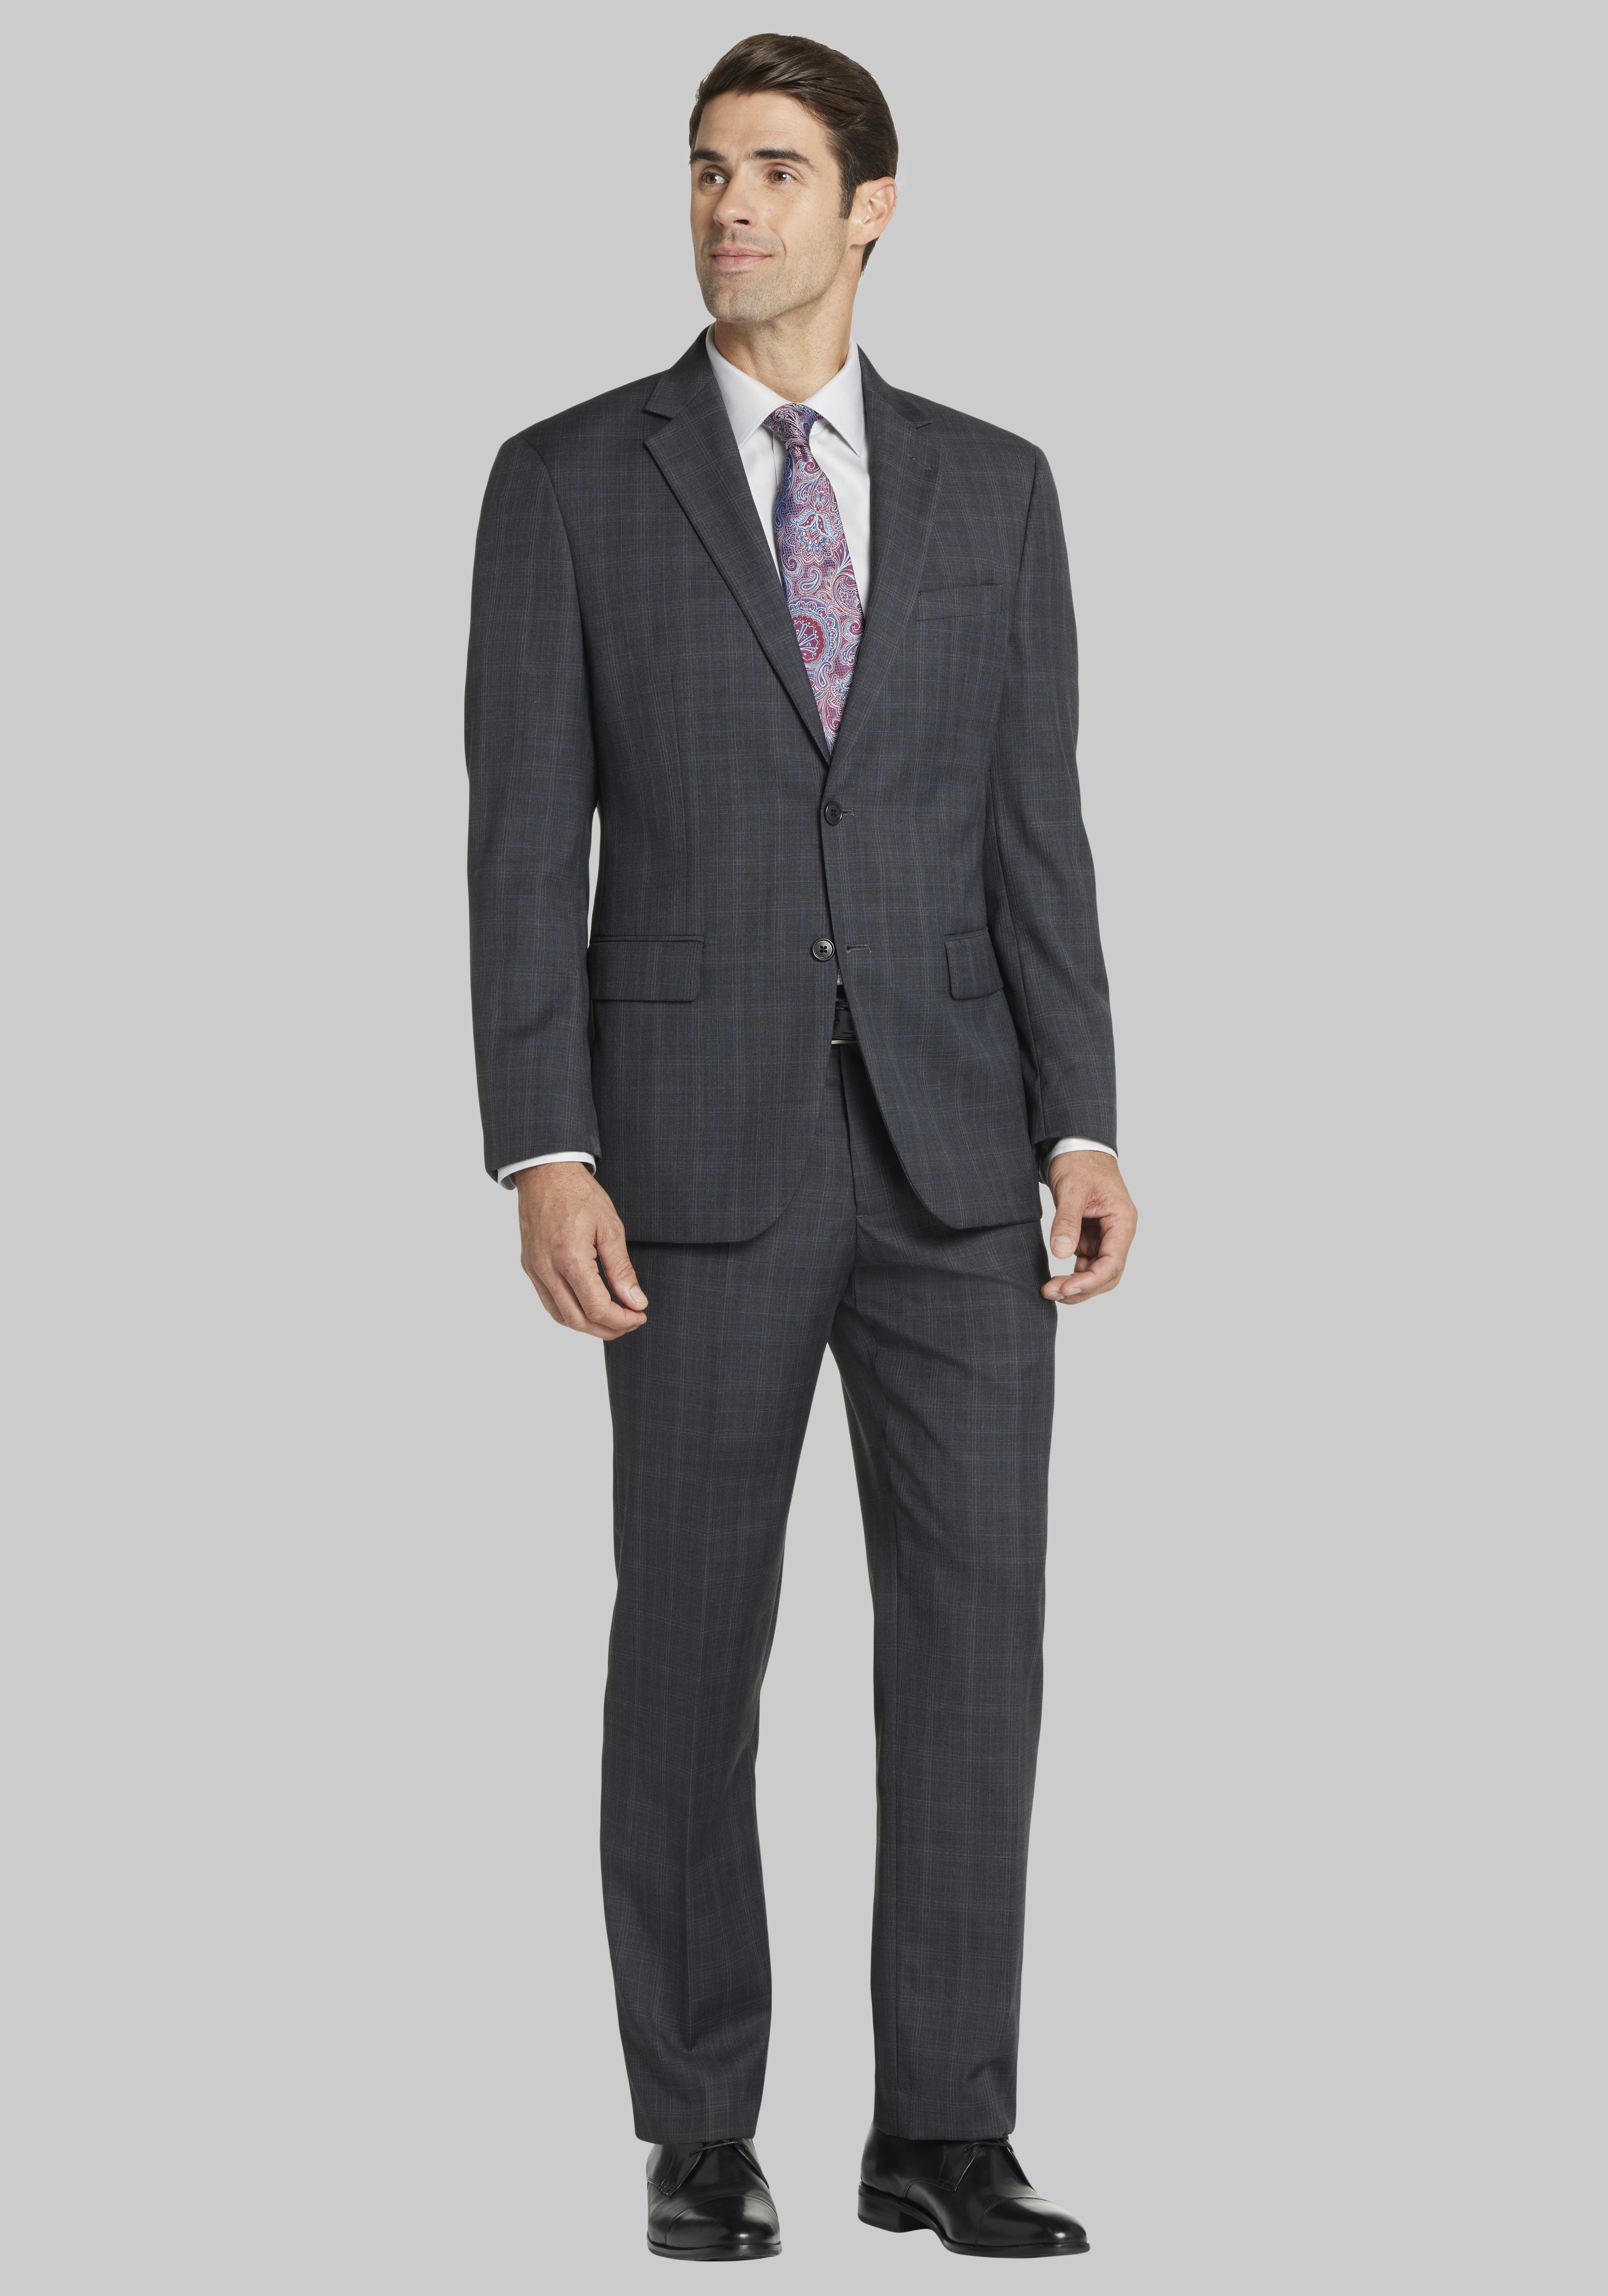 Suits, Buy Suit Deals, Grey Suits